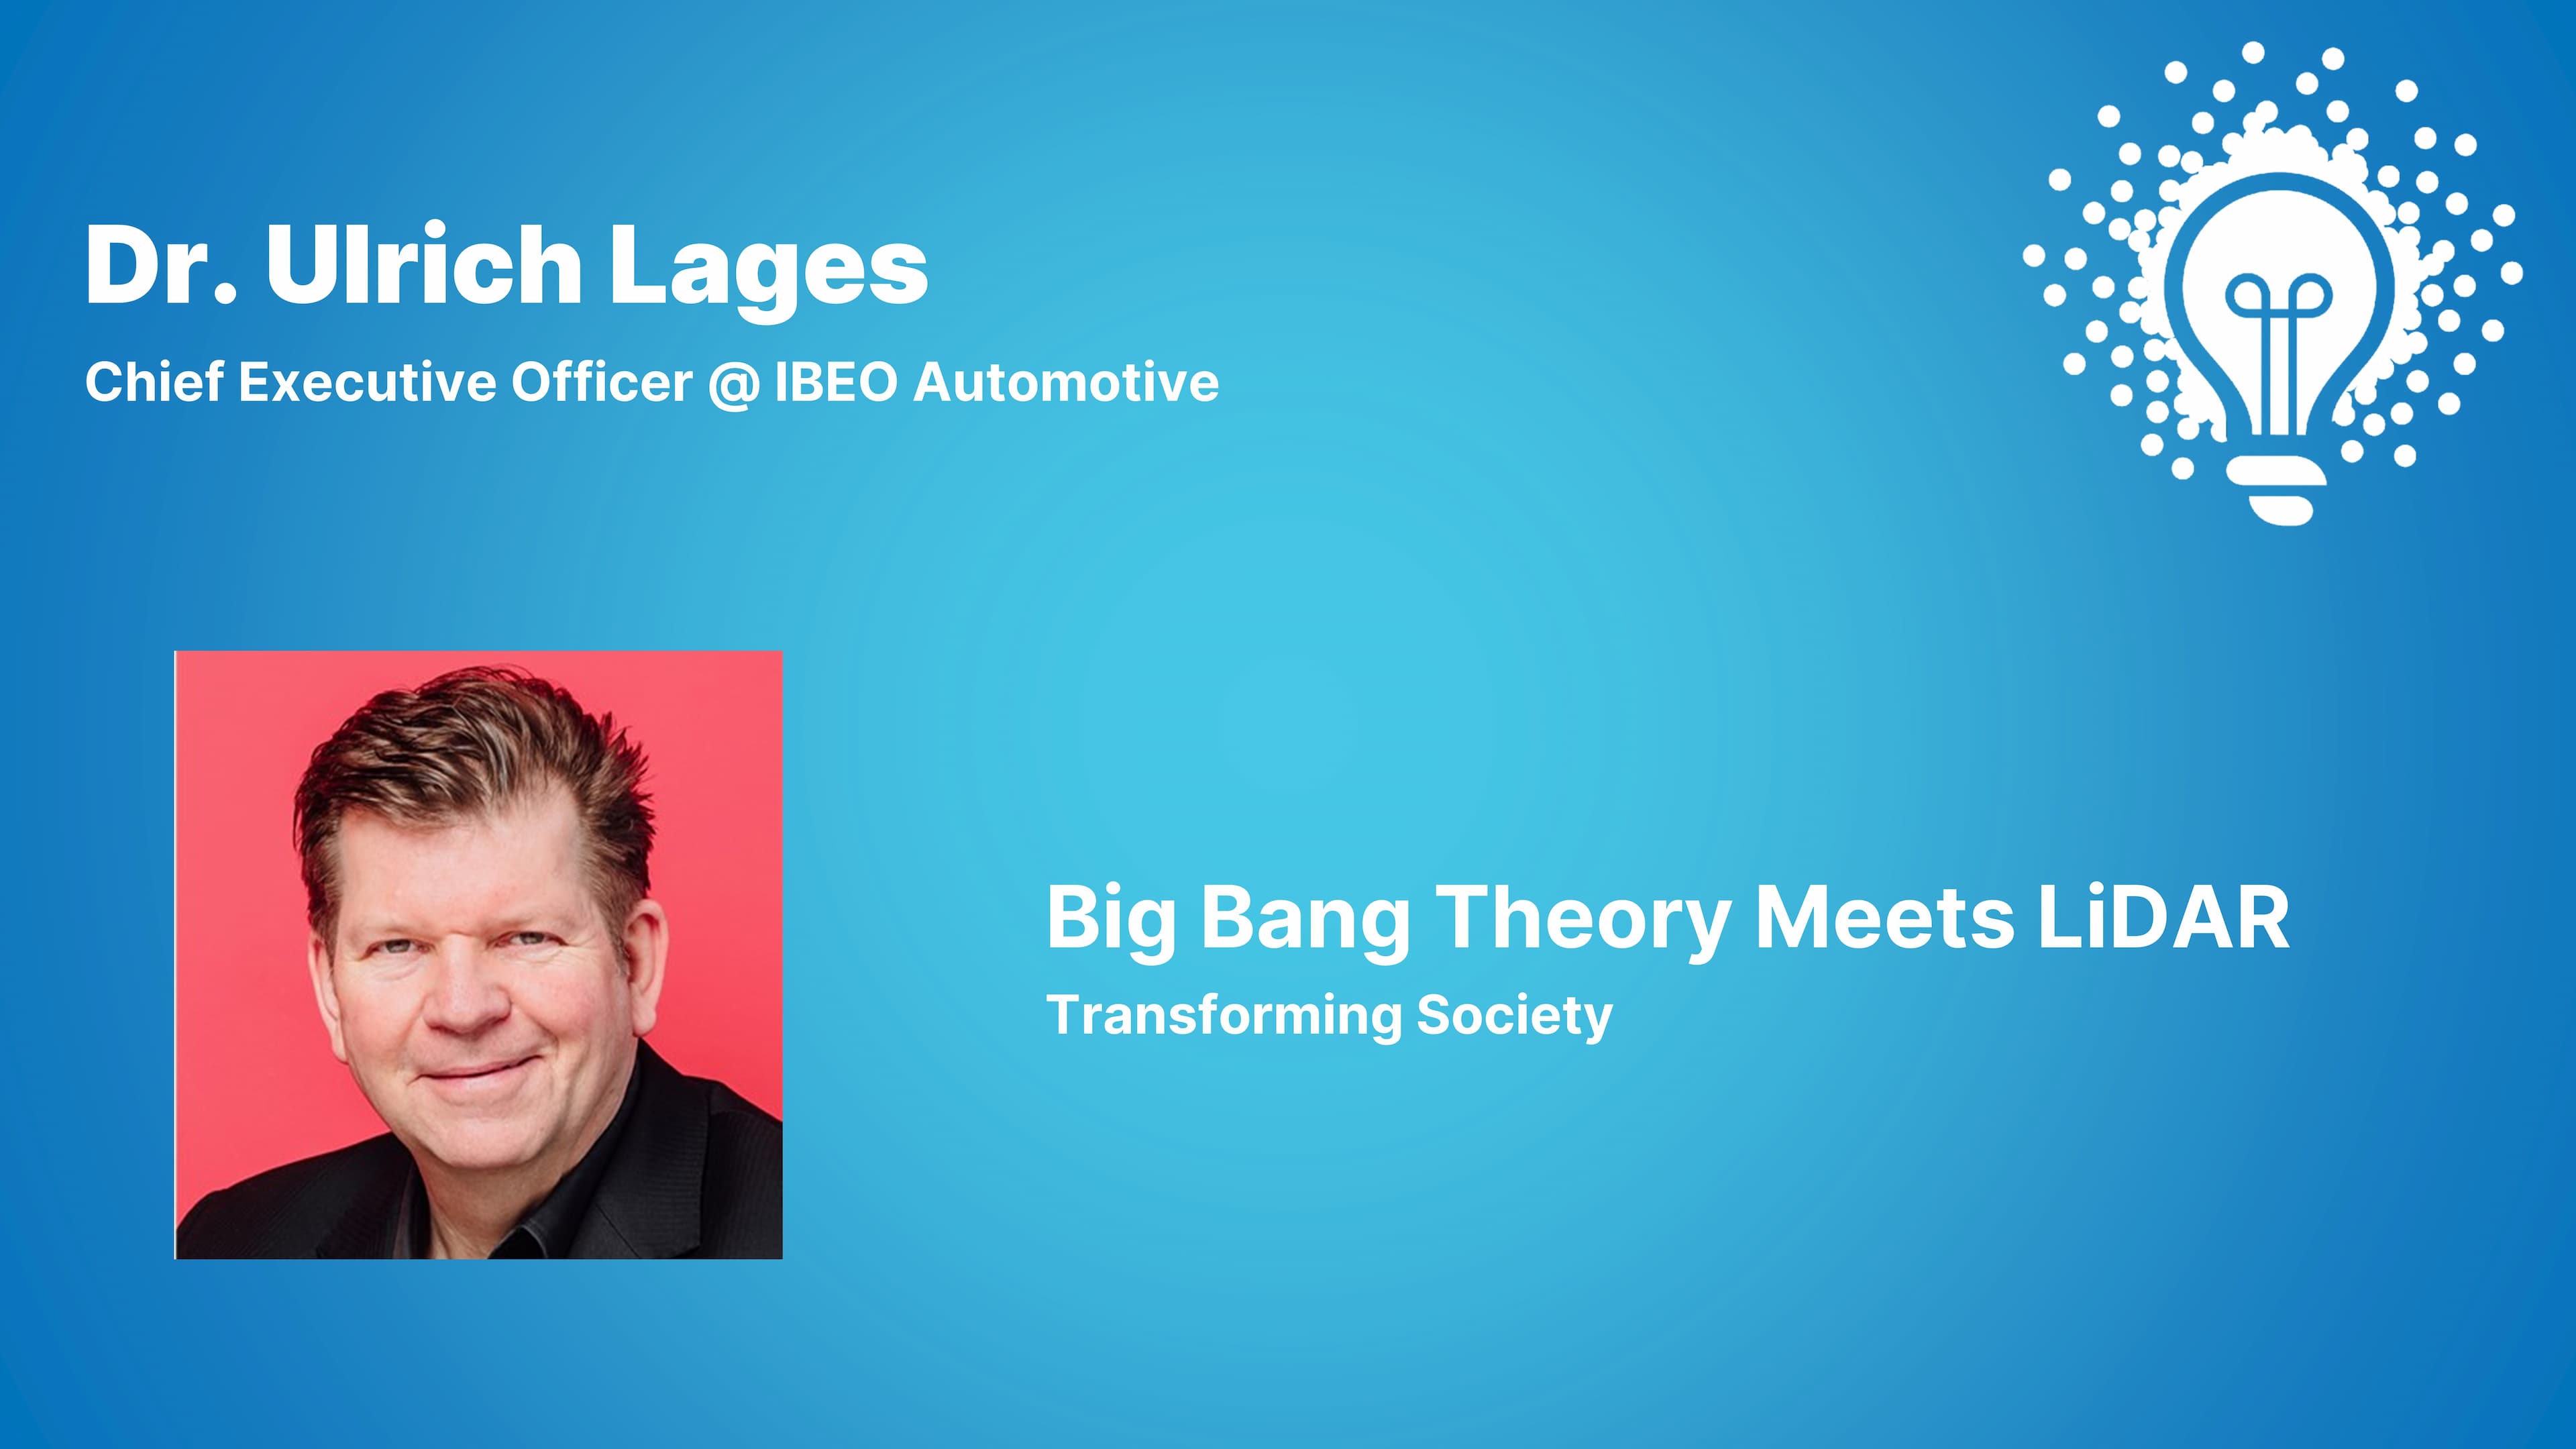 Big Bang Theory meets LiDAR